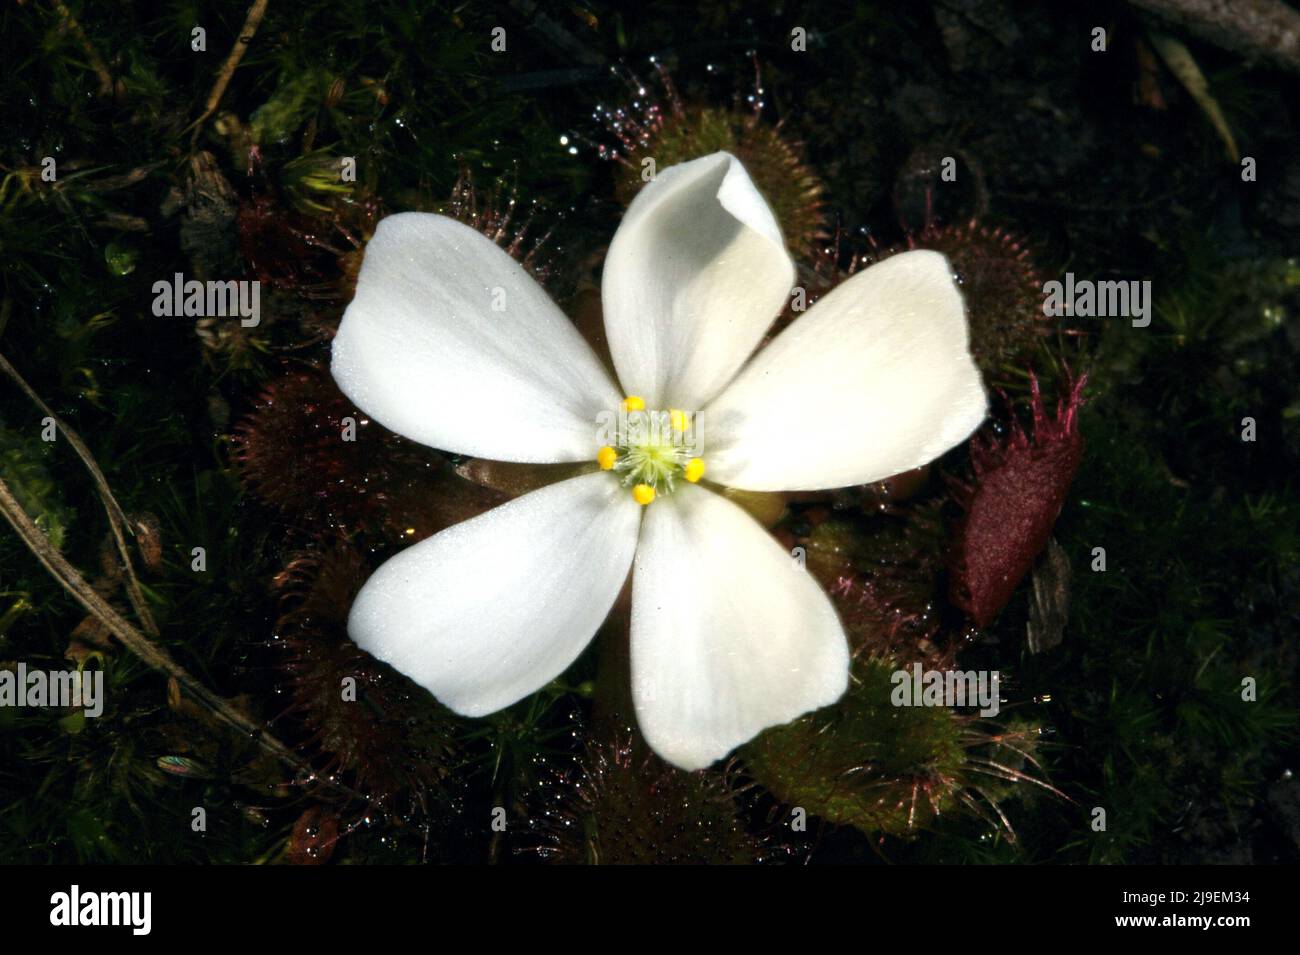 Eine hübsche Killerblume. Dieser duftende Sonnentau (Drosera Whitakerii) zieht Insekten mit seiner duftenden Blume an und fängt sie dann auf seinen klebrigen Blättern ein. Stockfoto